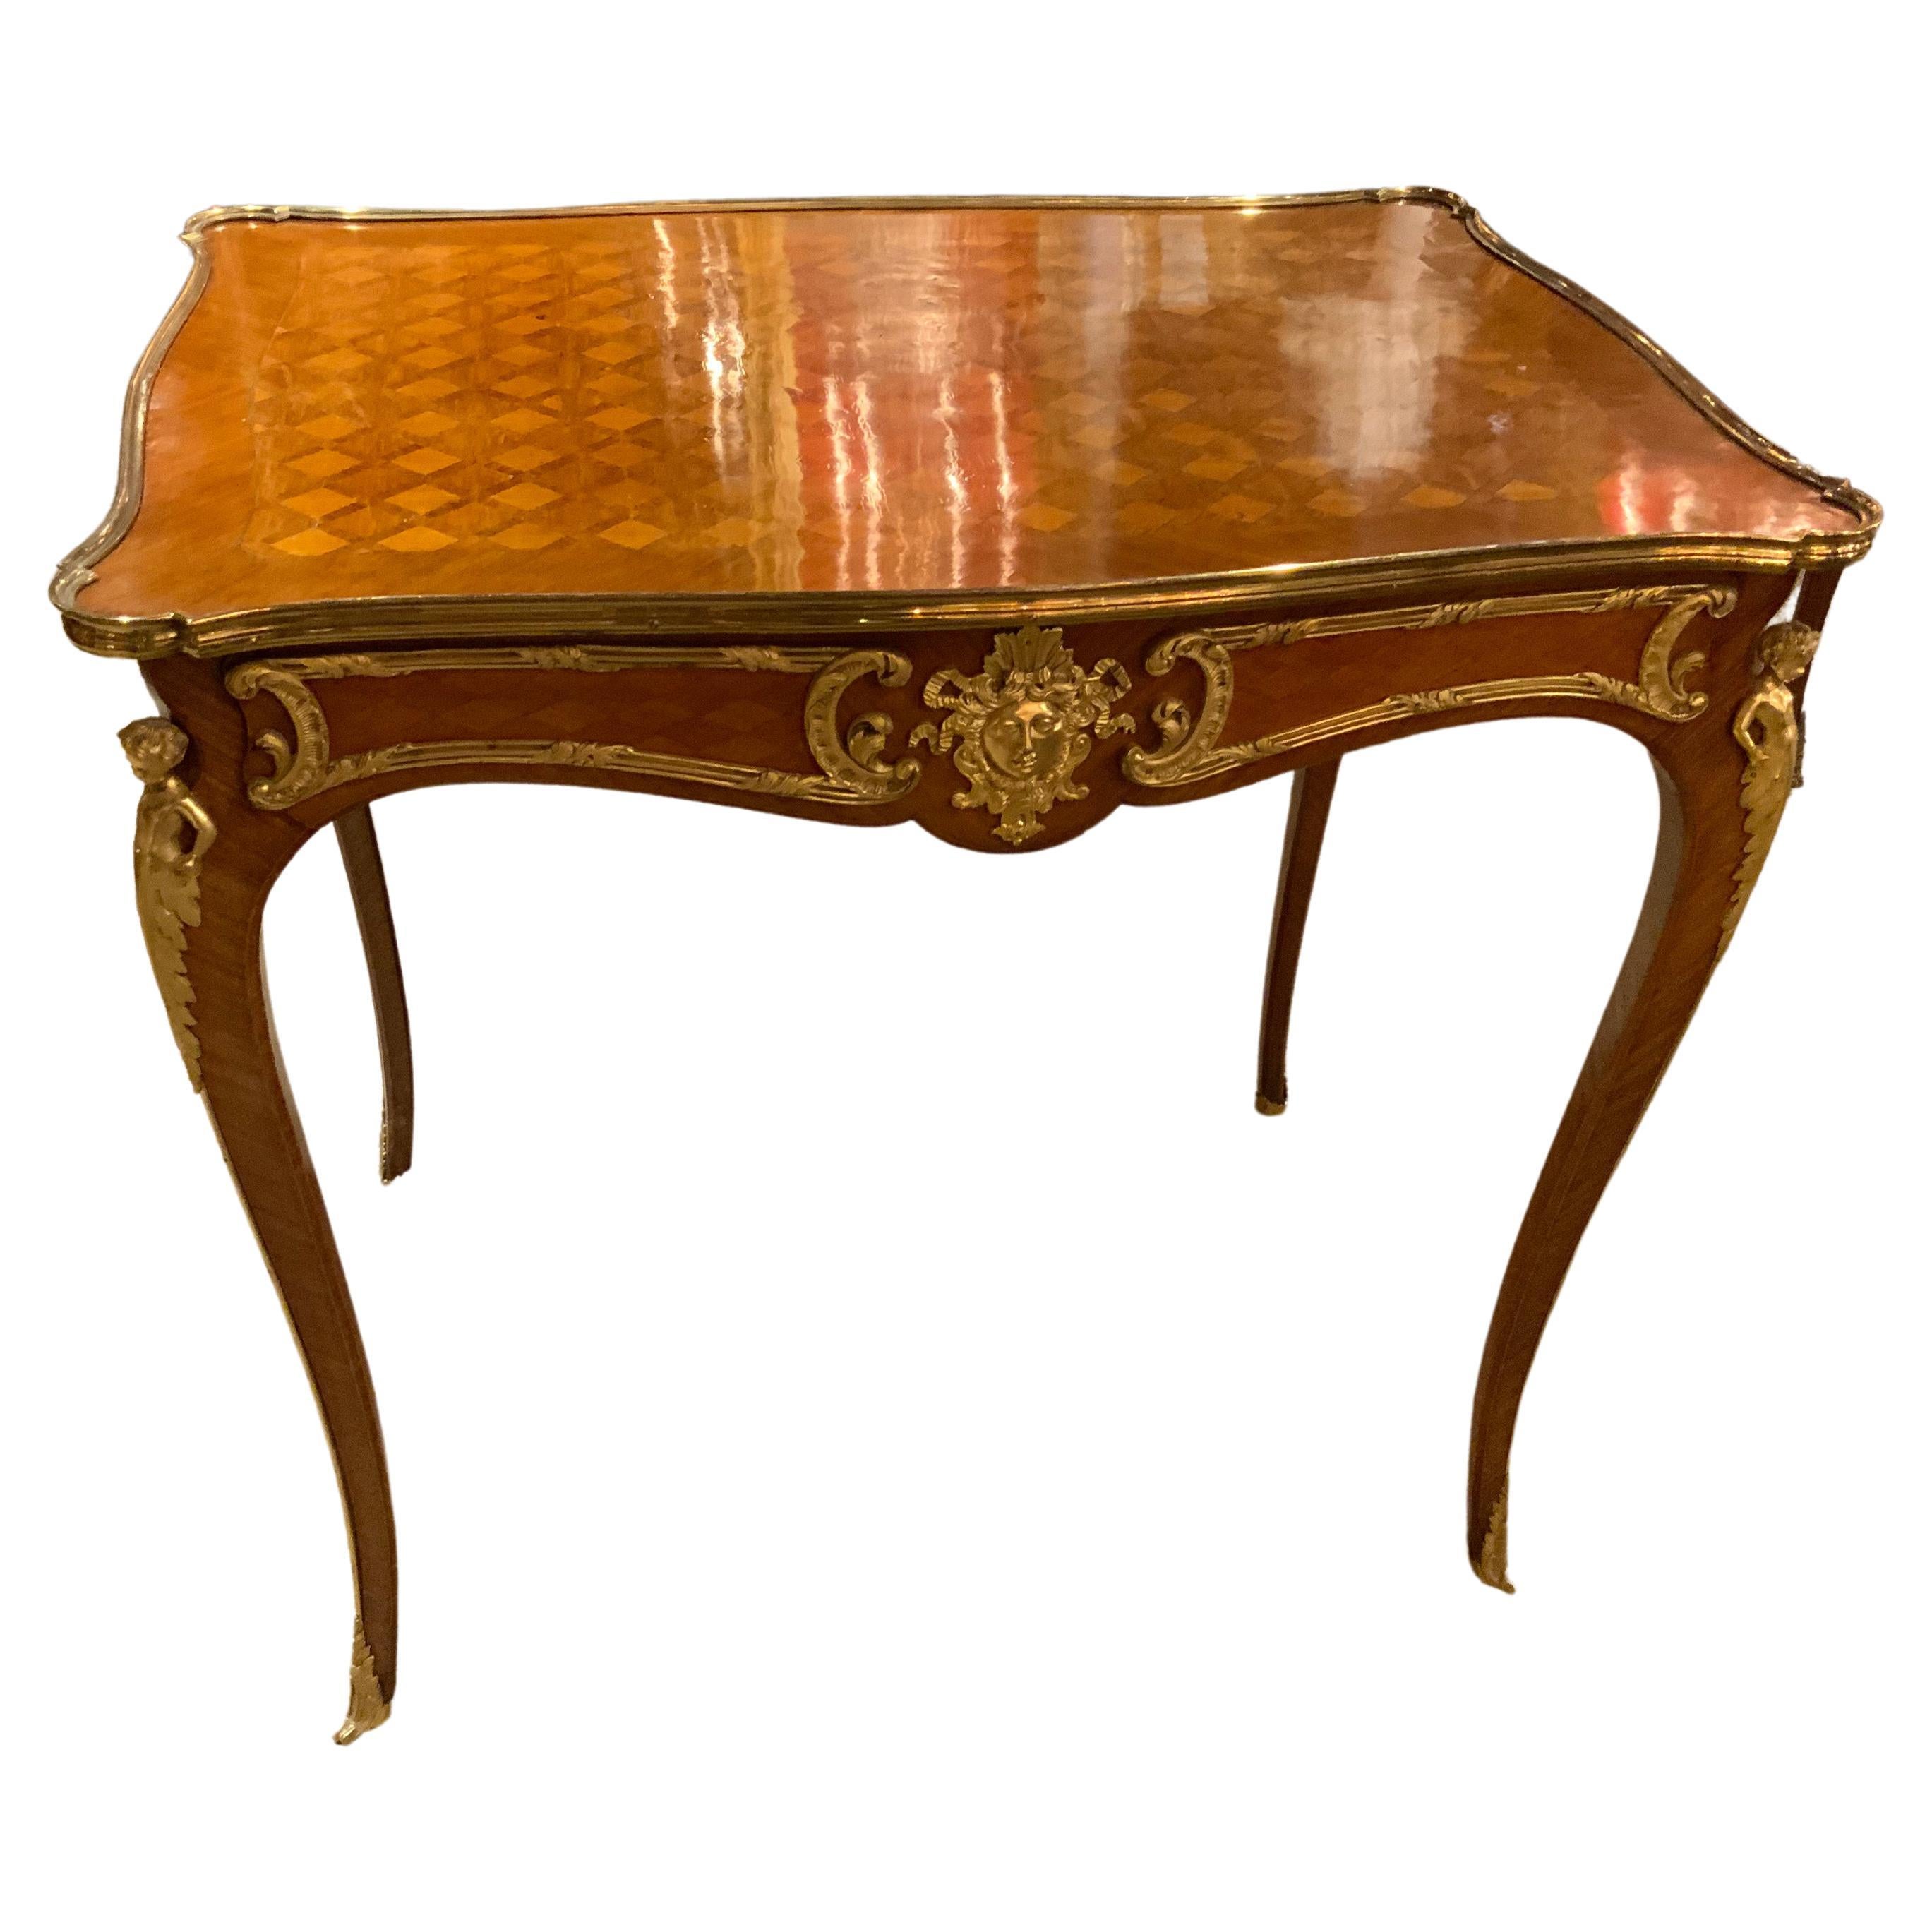 Table d'appoint en marqueterie française avec montures en bronze doré de style Louis XVI